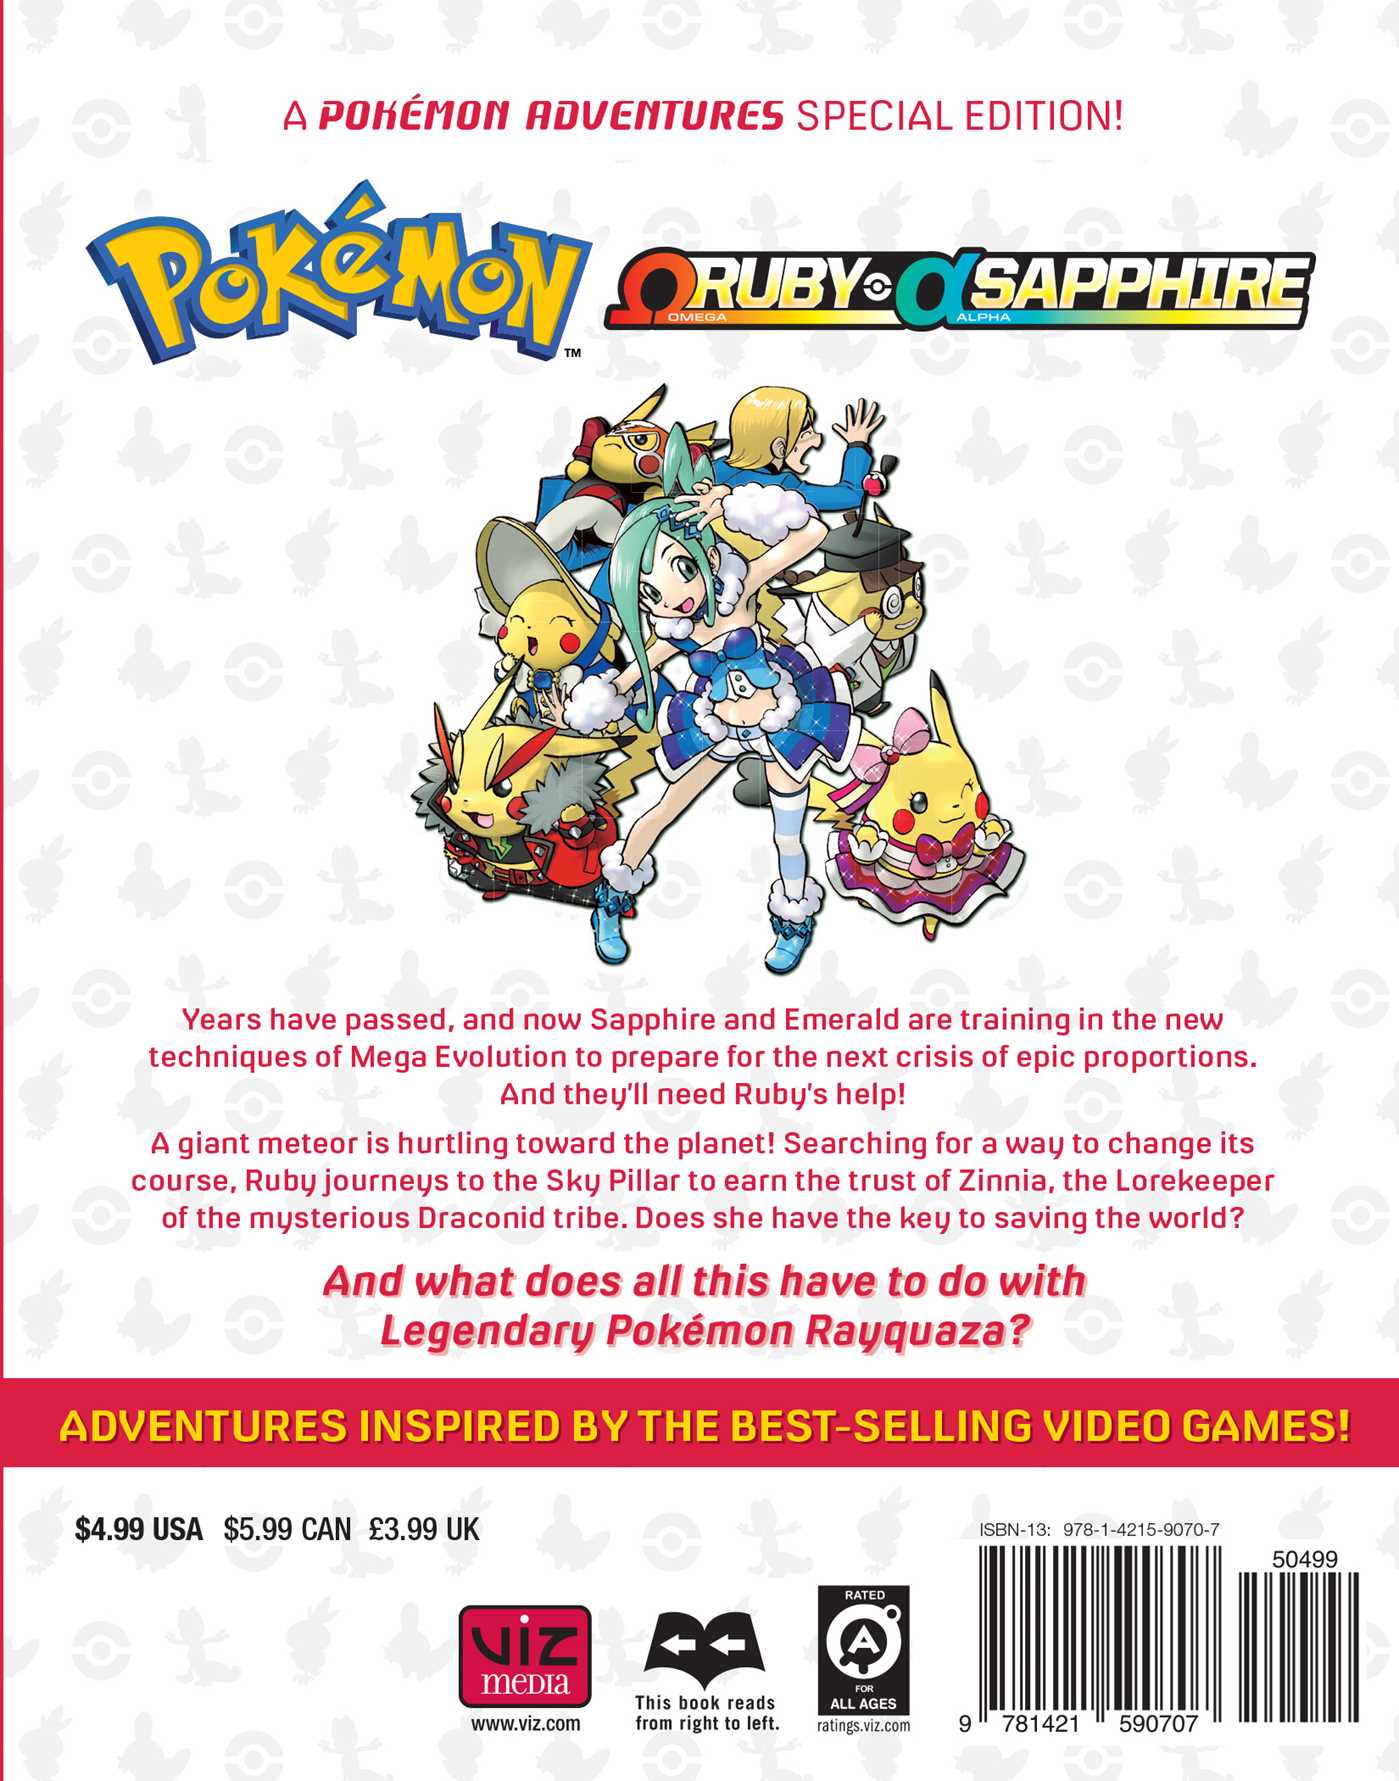 Pokémon Ruby & Sapphire Vol. 1